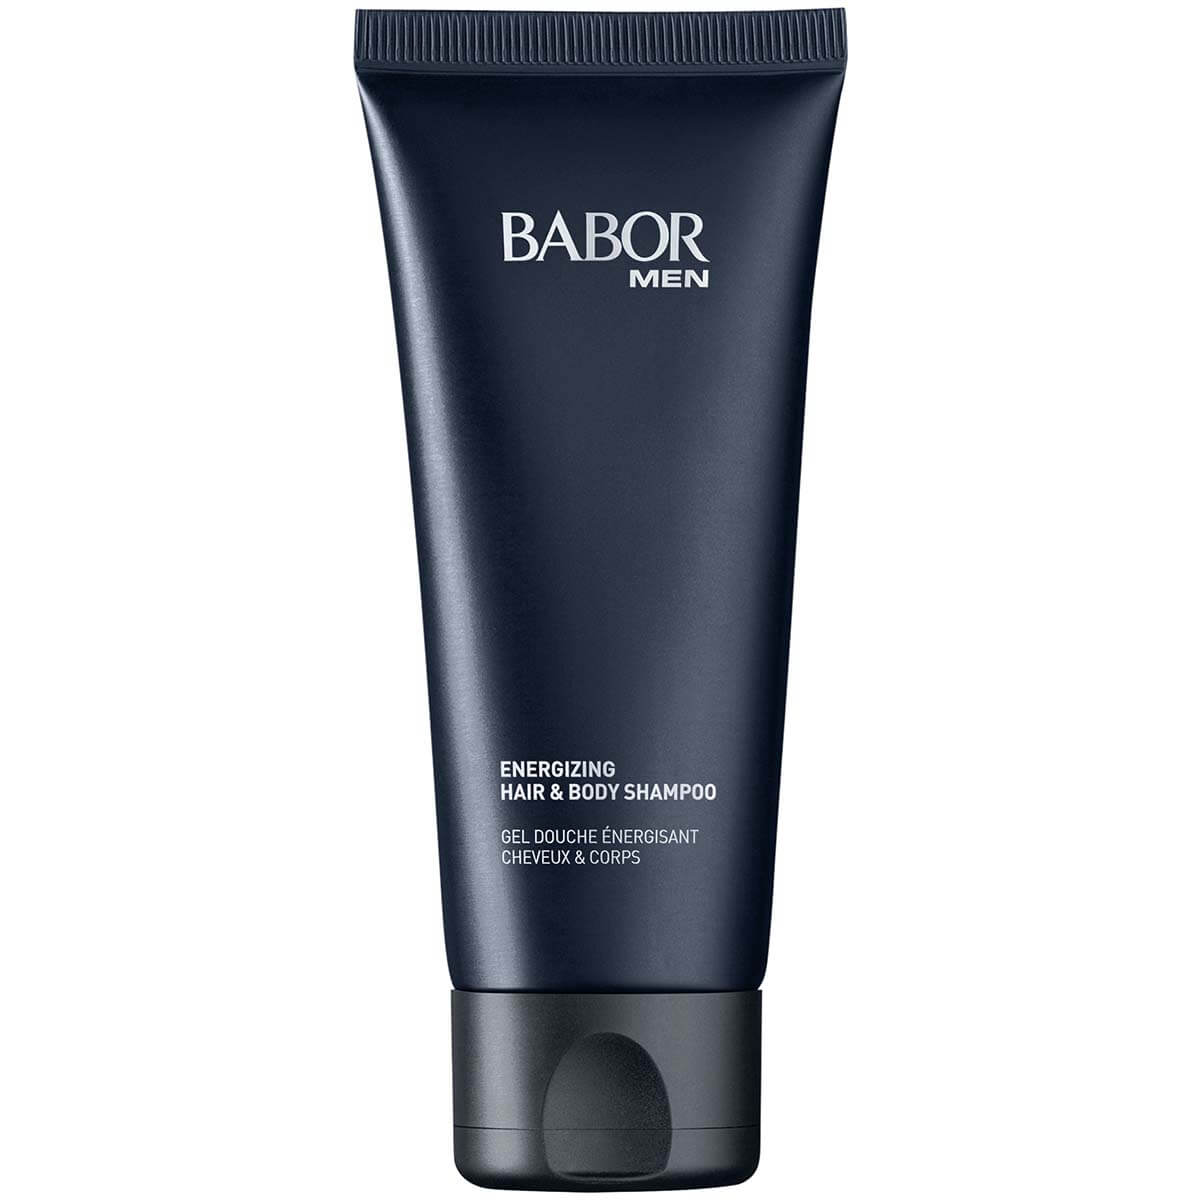 BABOR MEN Energizing Hair & Body Shampoo 200ml - интернет-магазин профессиональной косметики Spadream, изображение 33862